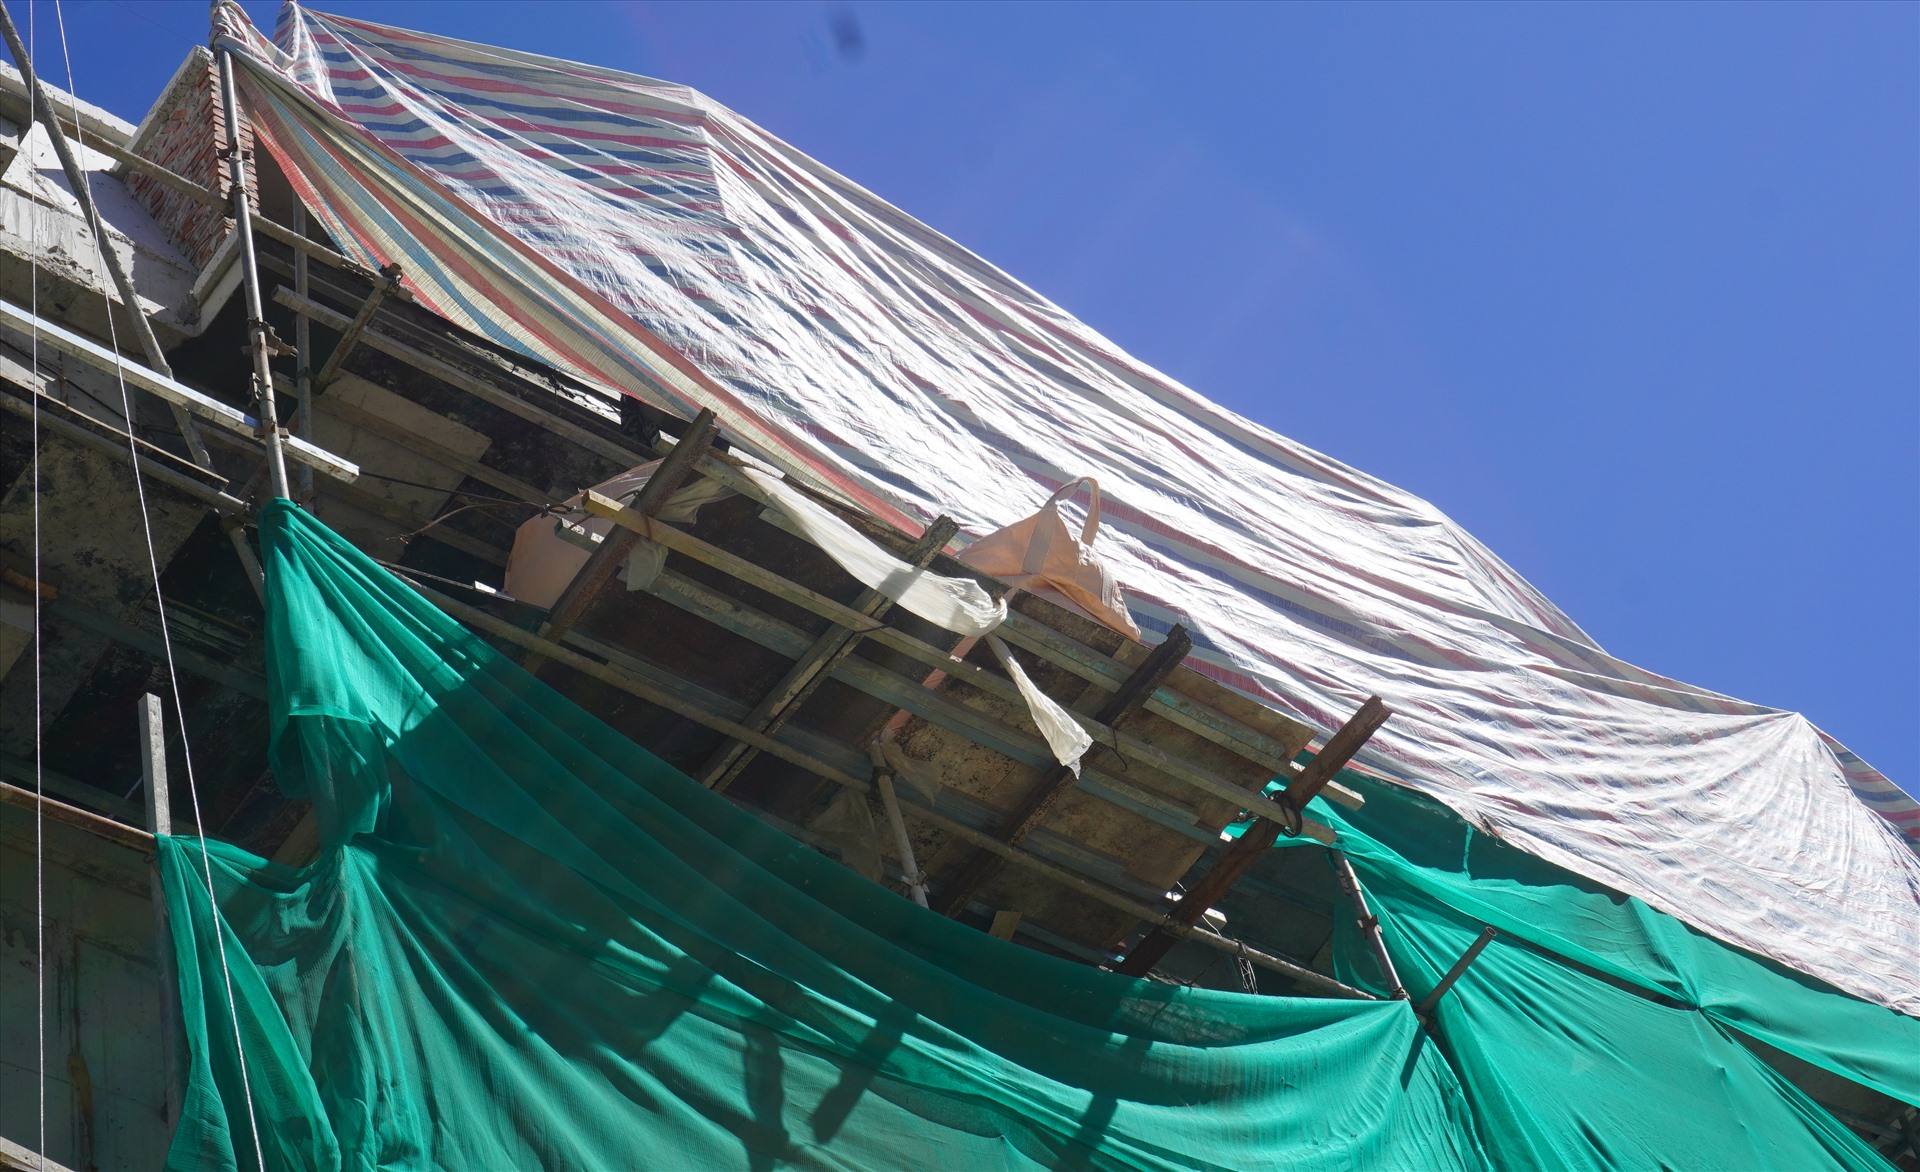 Trên tầng cao của các ngôi nhà, công nhân phải căng những tấm bạt che nắng để làm việc. Ảnh: Quách Du